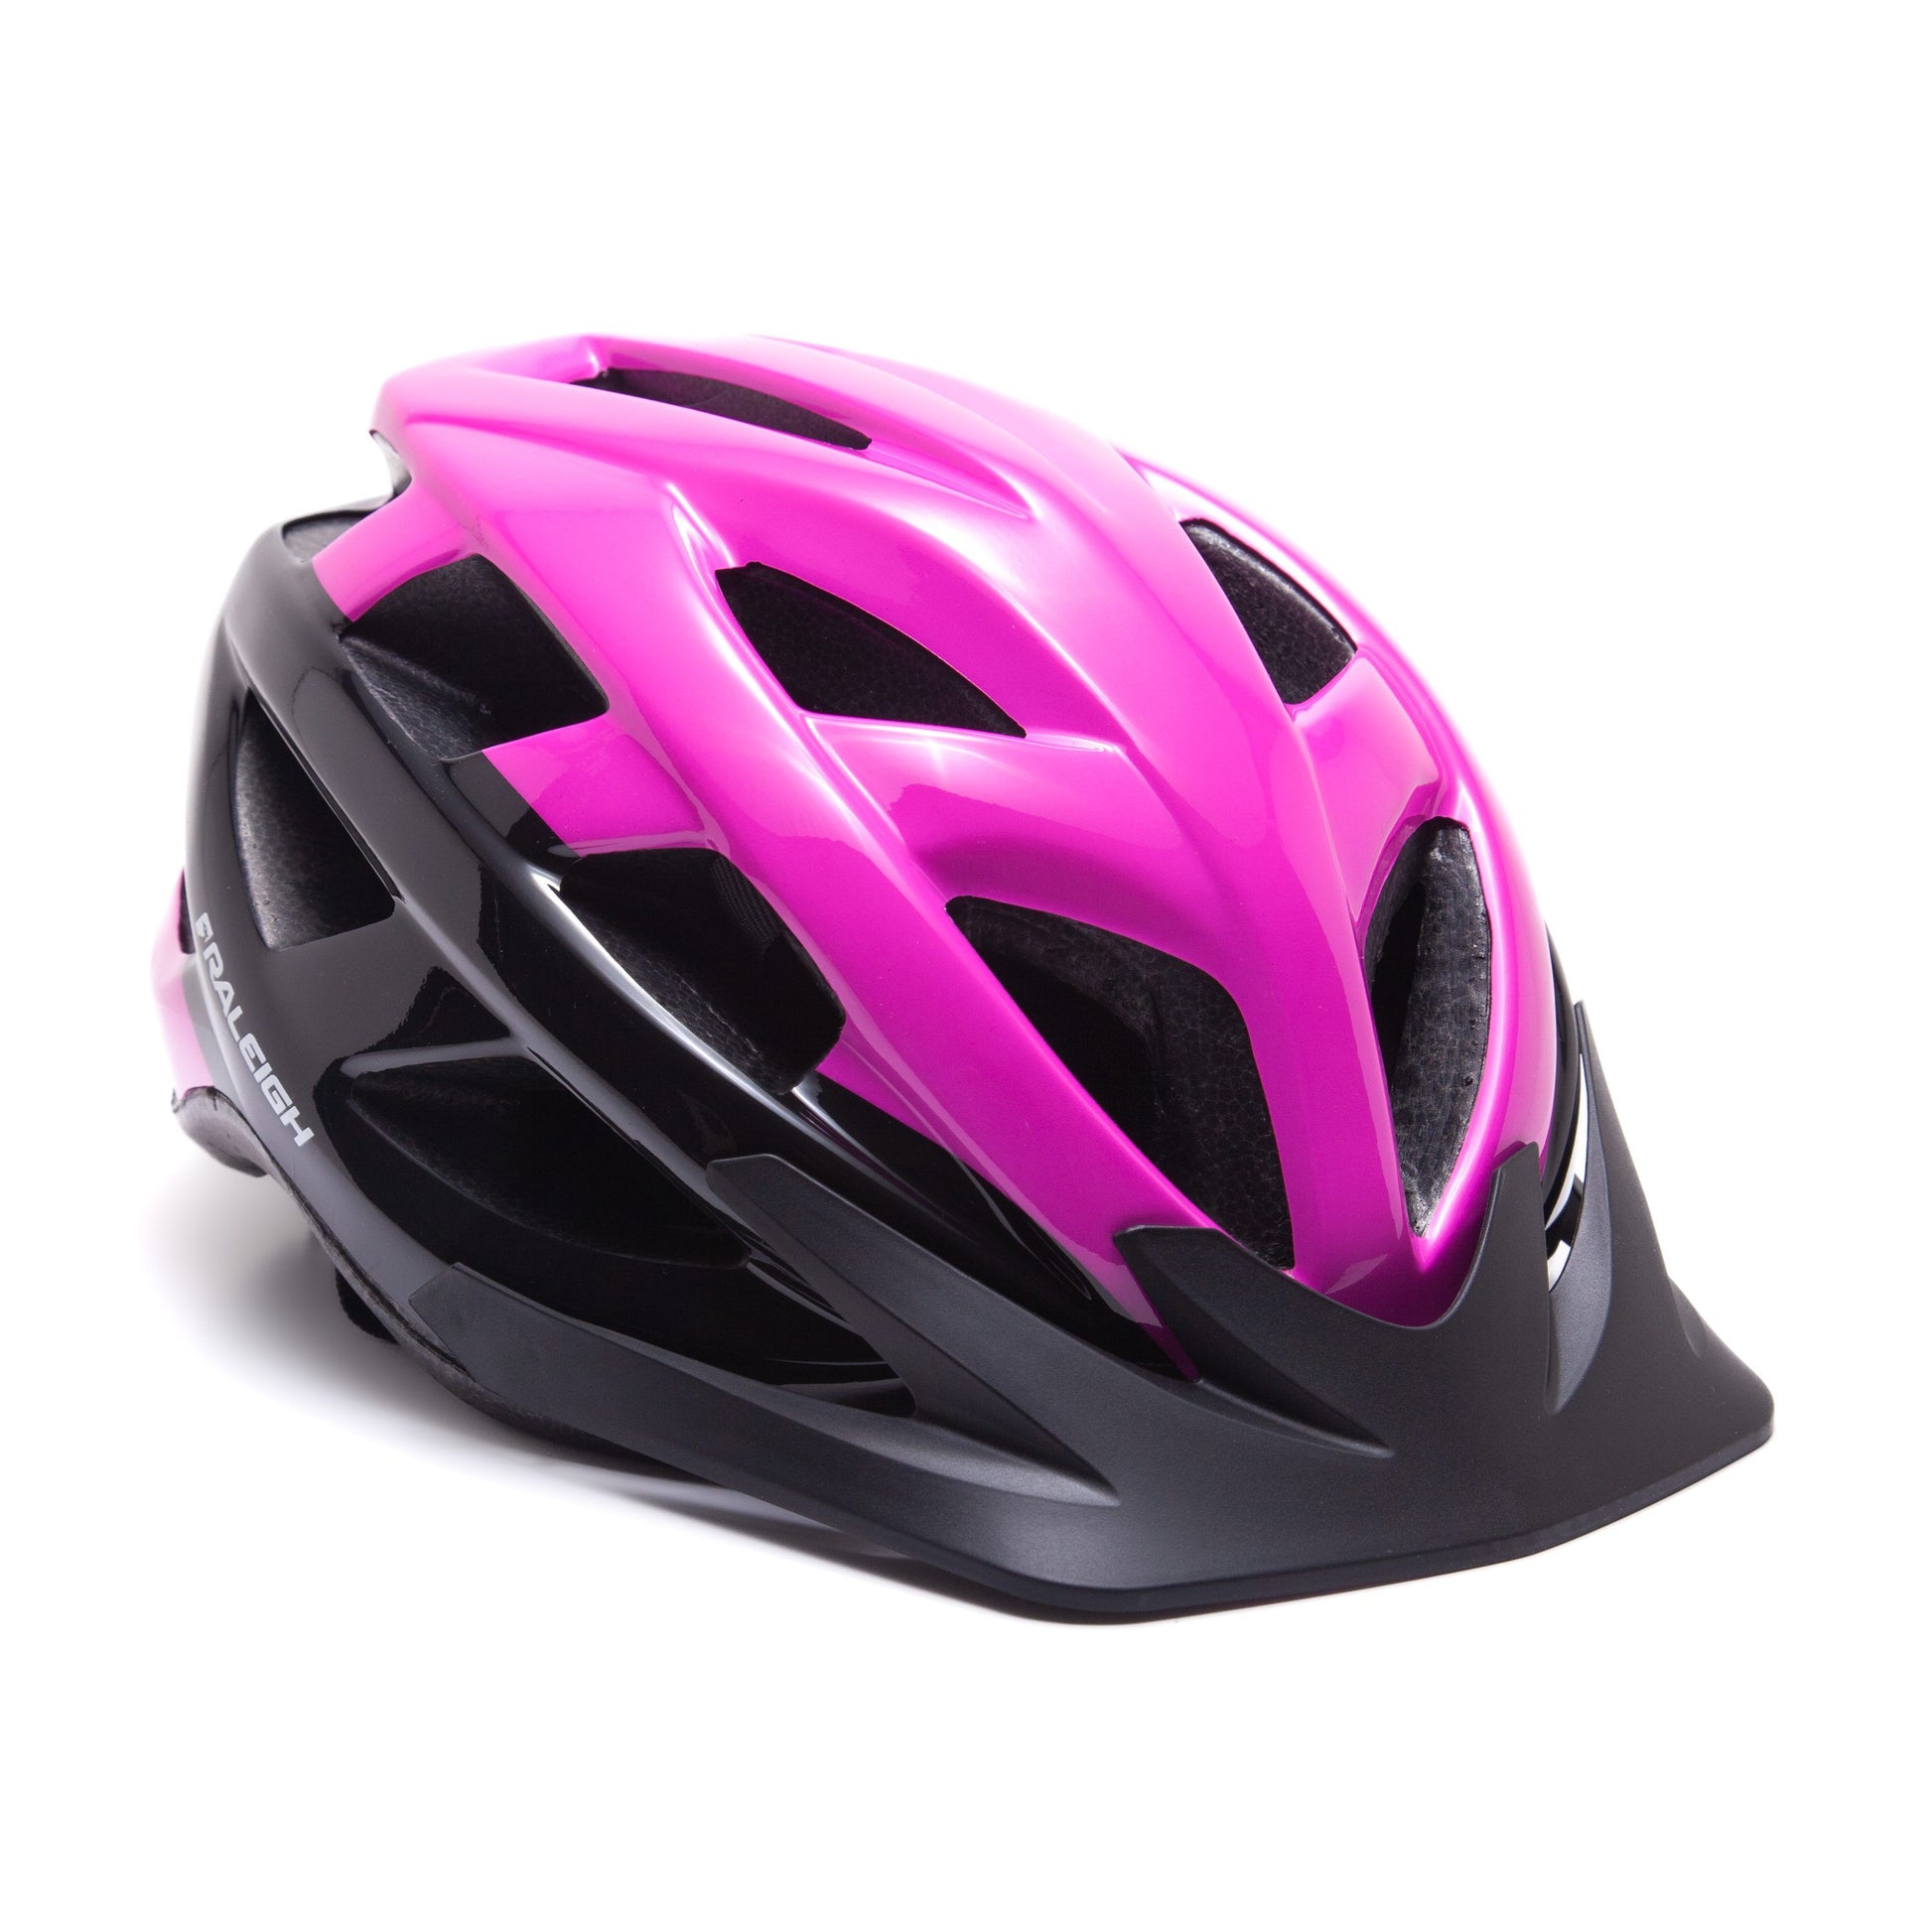 Raleigh HELMET QUEST PNK/BLK 54-58 GO Cycling Helmet Pink/Black 54-58cm